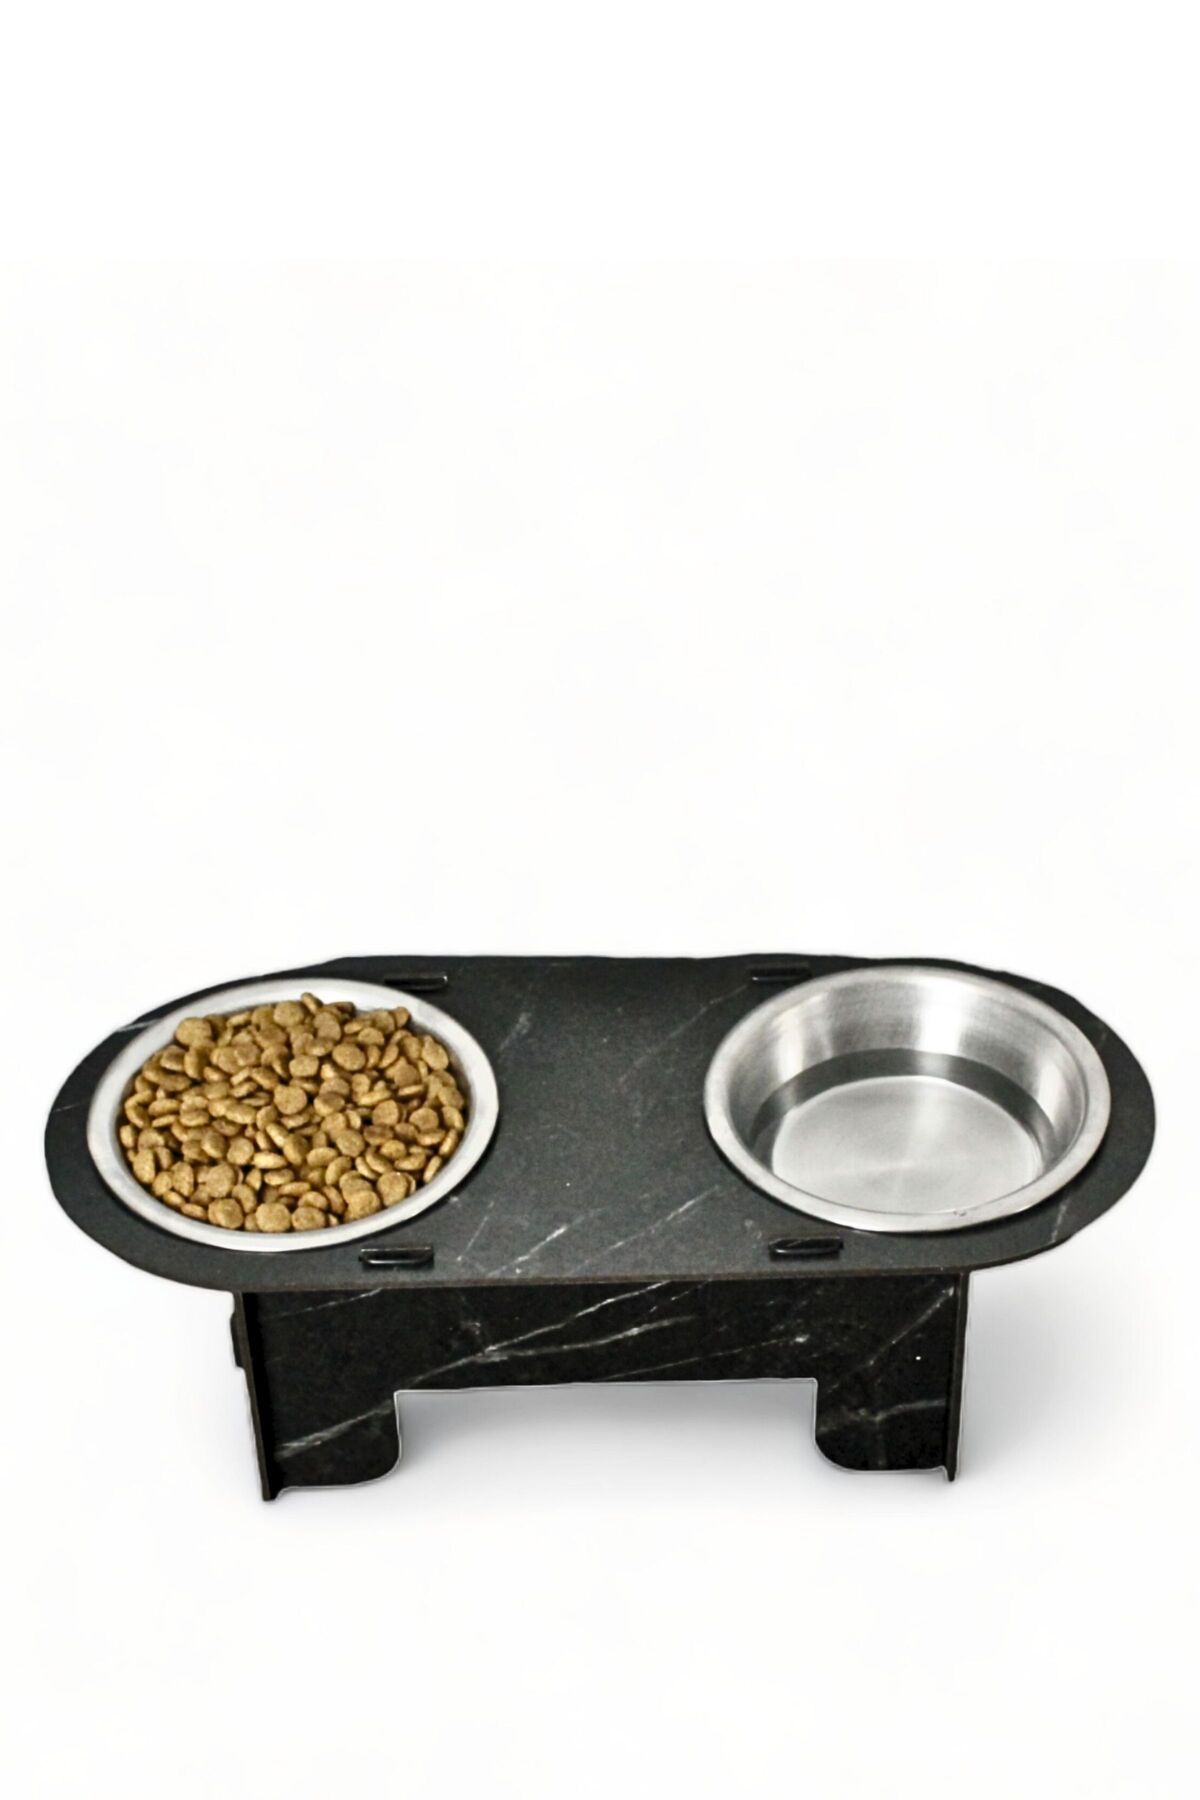 Evene Kedi Mama Kabı Kedi Su Kabı Kedi Mama ve Su Kabı Kedi Yemek Kabı 2 Çelik Kase Model 1 Siyah Mermer